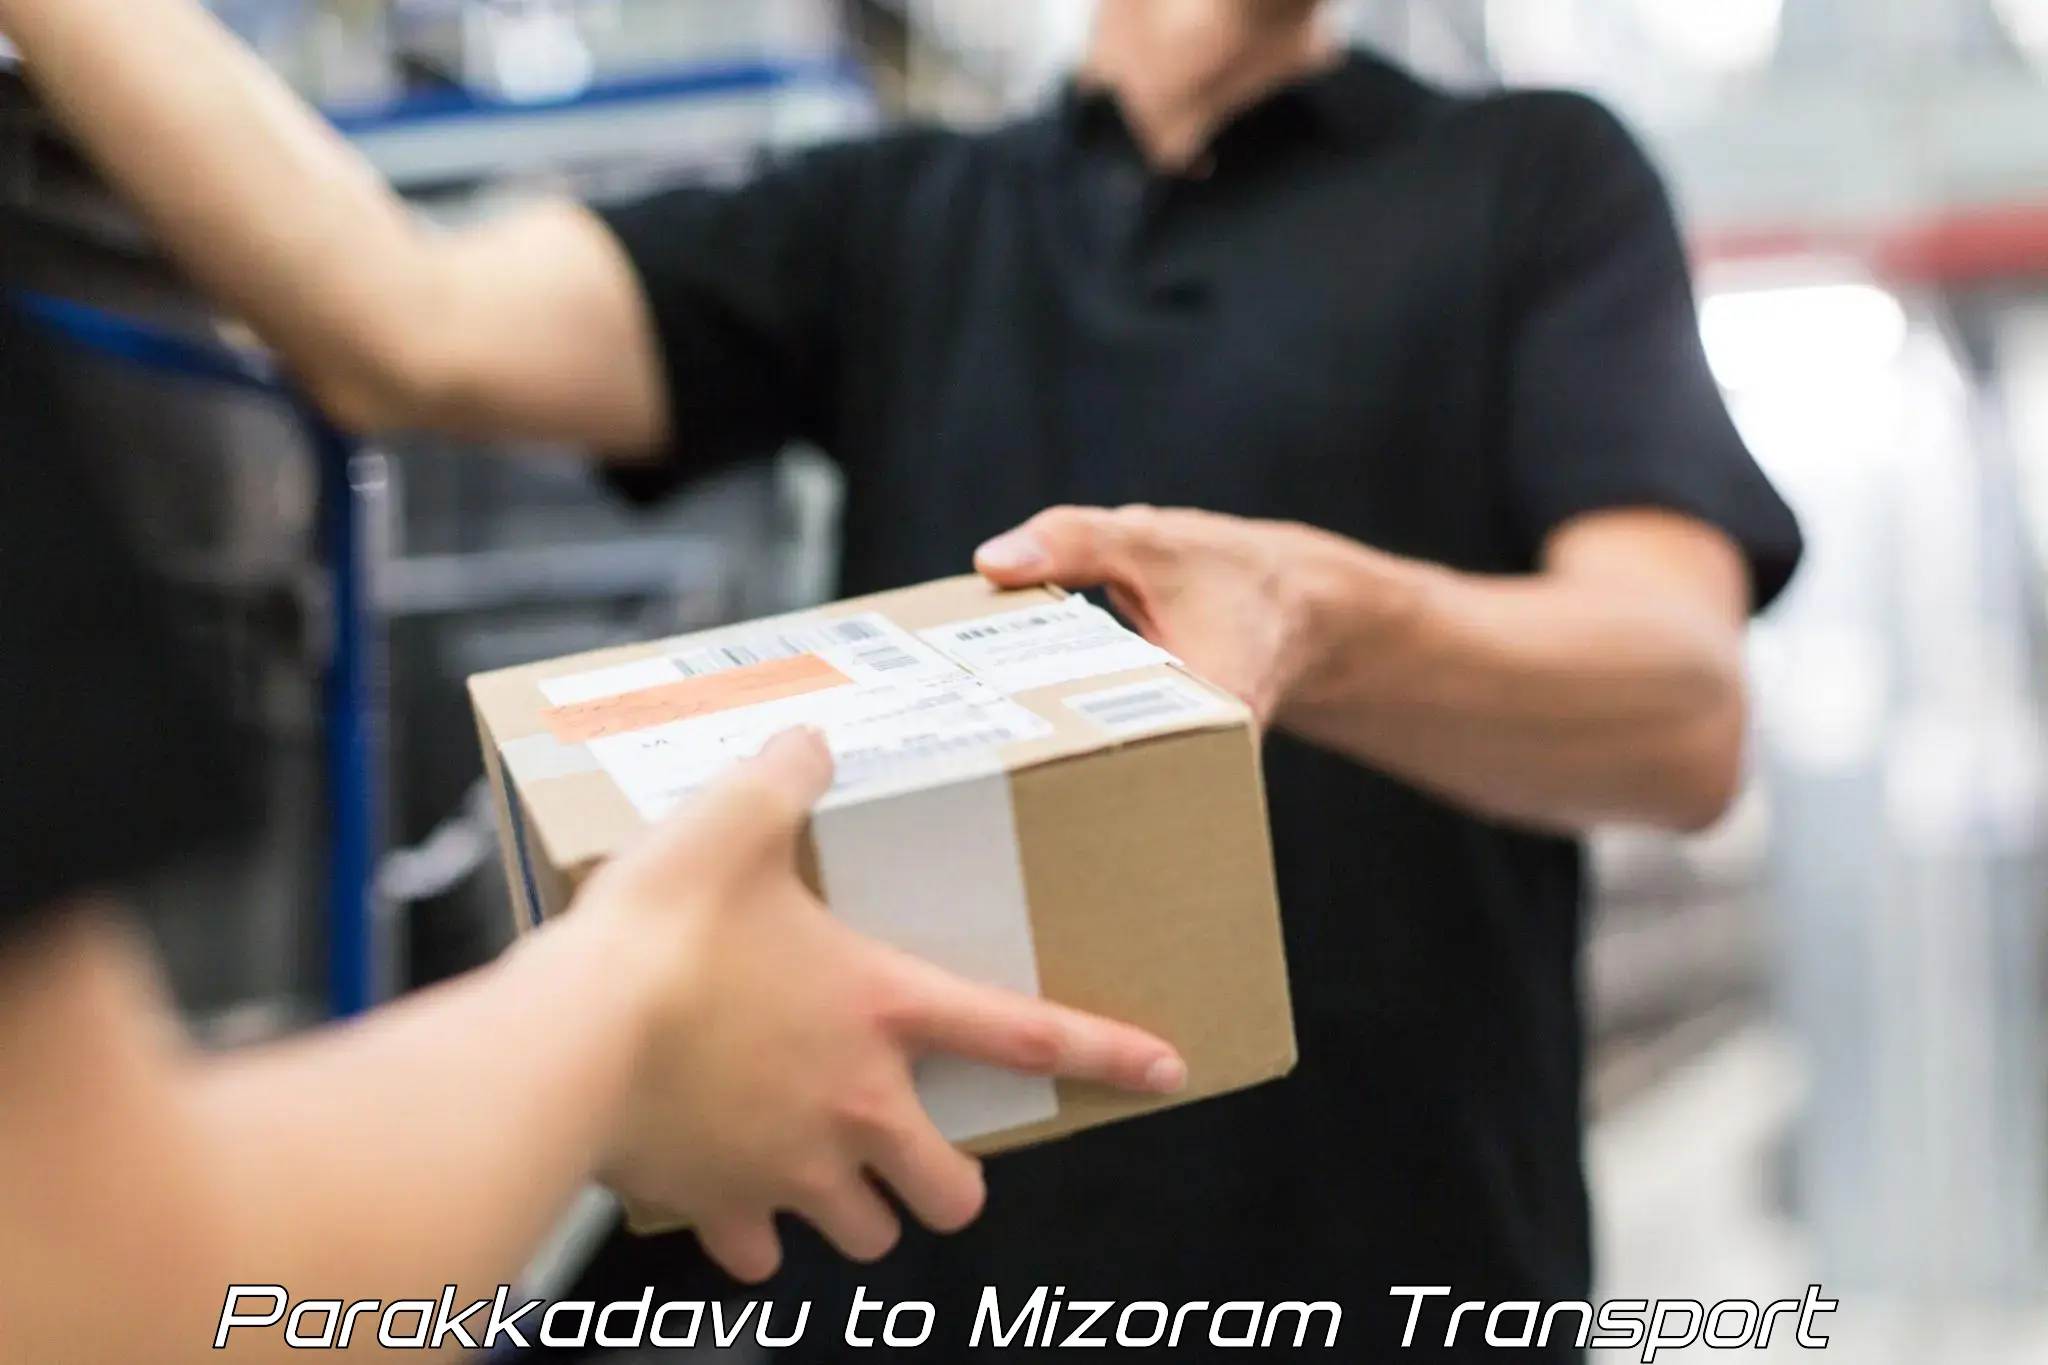 Two wheeler parcel service Parakkadavu to Mizoram